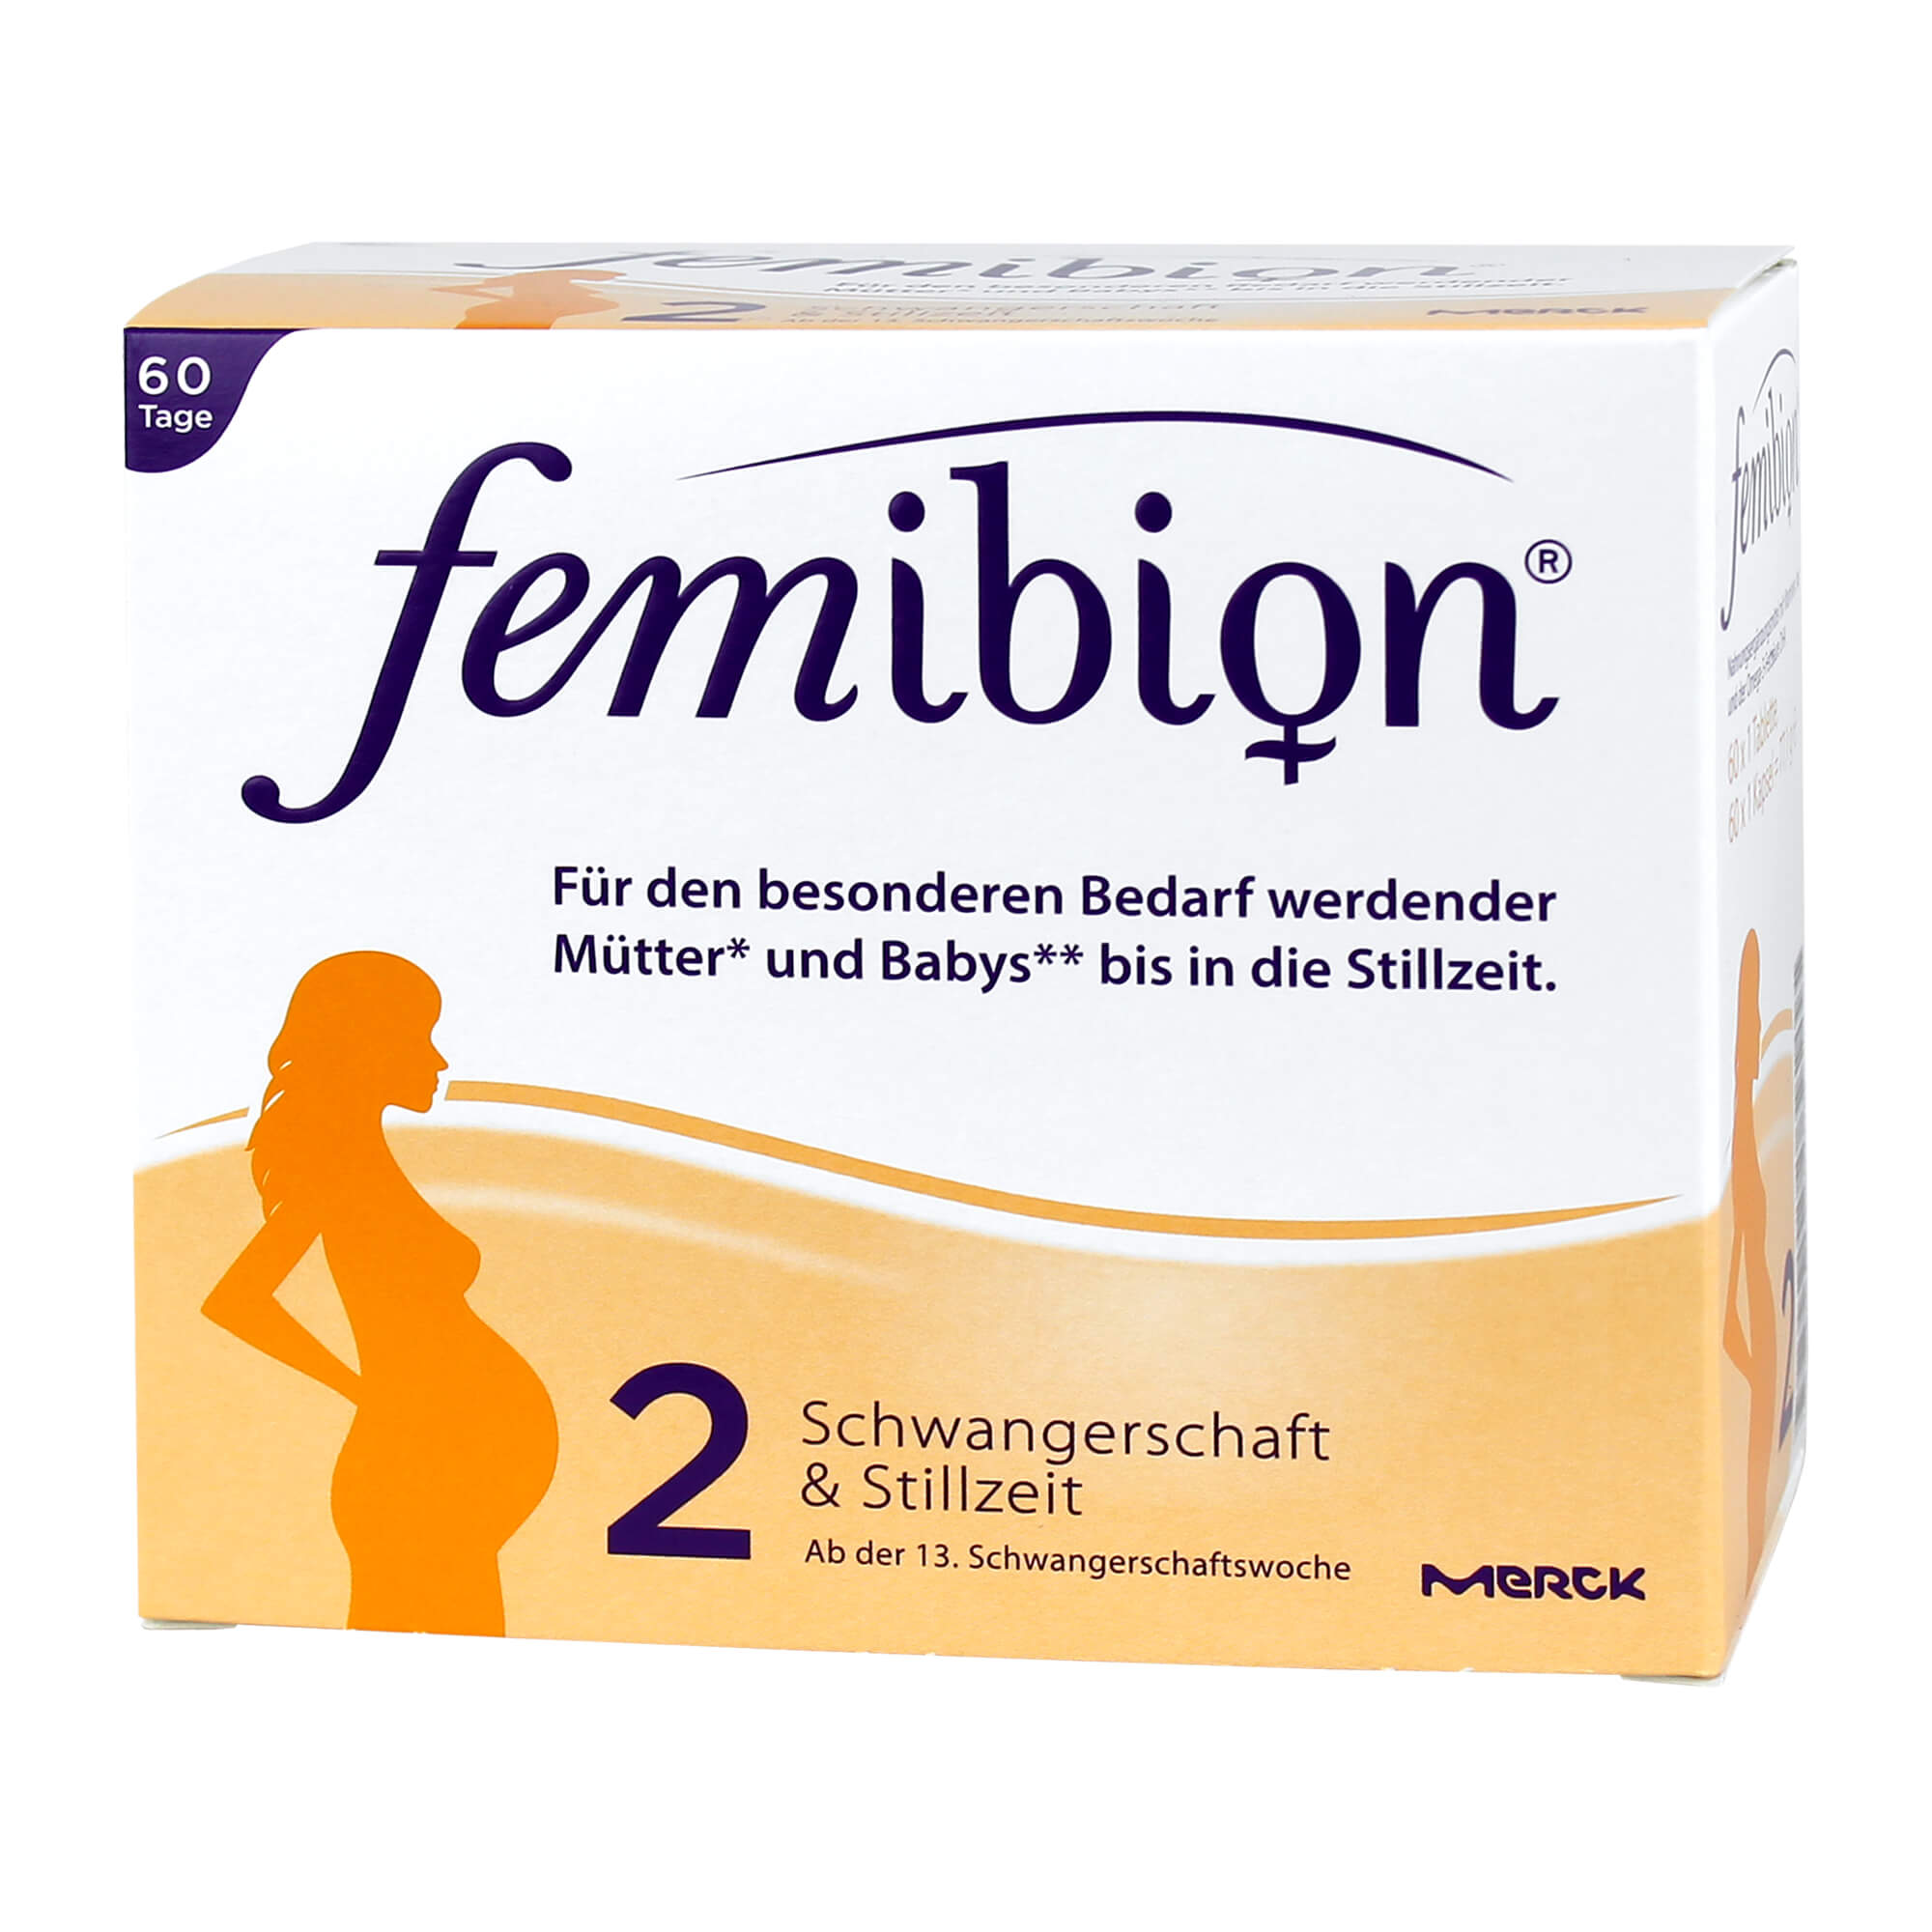 Nahrungsergänzungsmittel mit Vitaminen und Jod. Femibion Schwangerschaft 2 enthält 60 Tabletten + 60 Kapseln = 60 Tagesportionen.